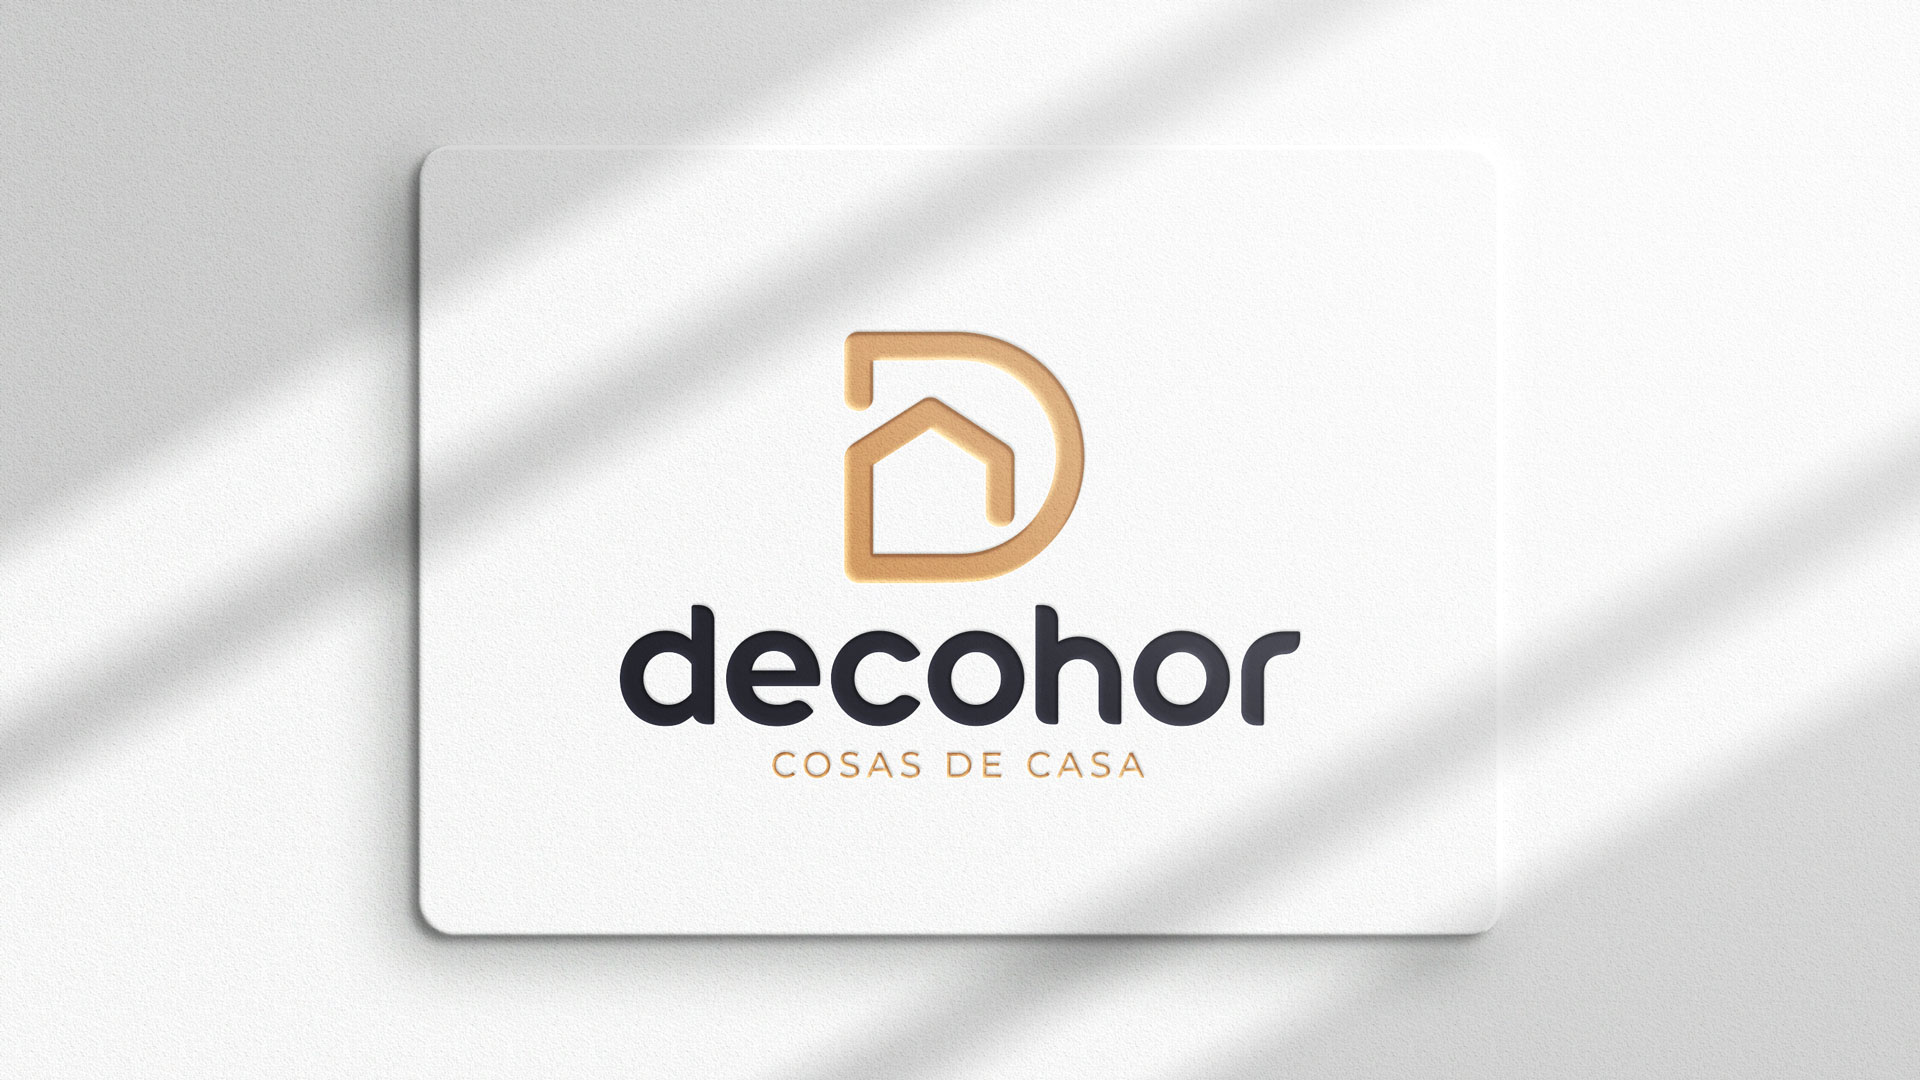 Decohor